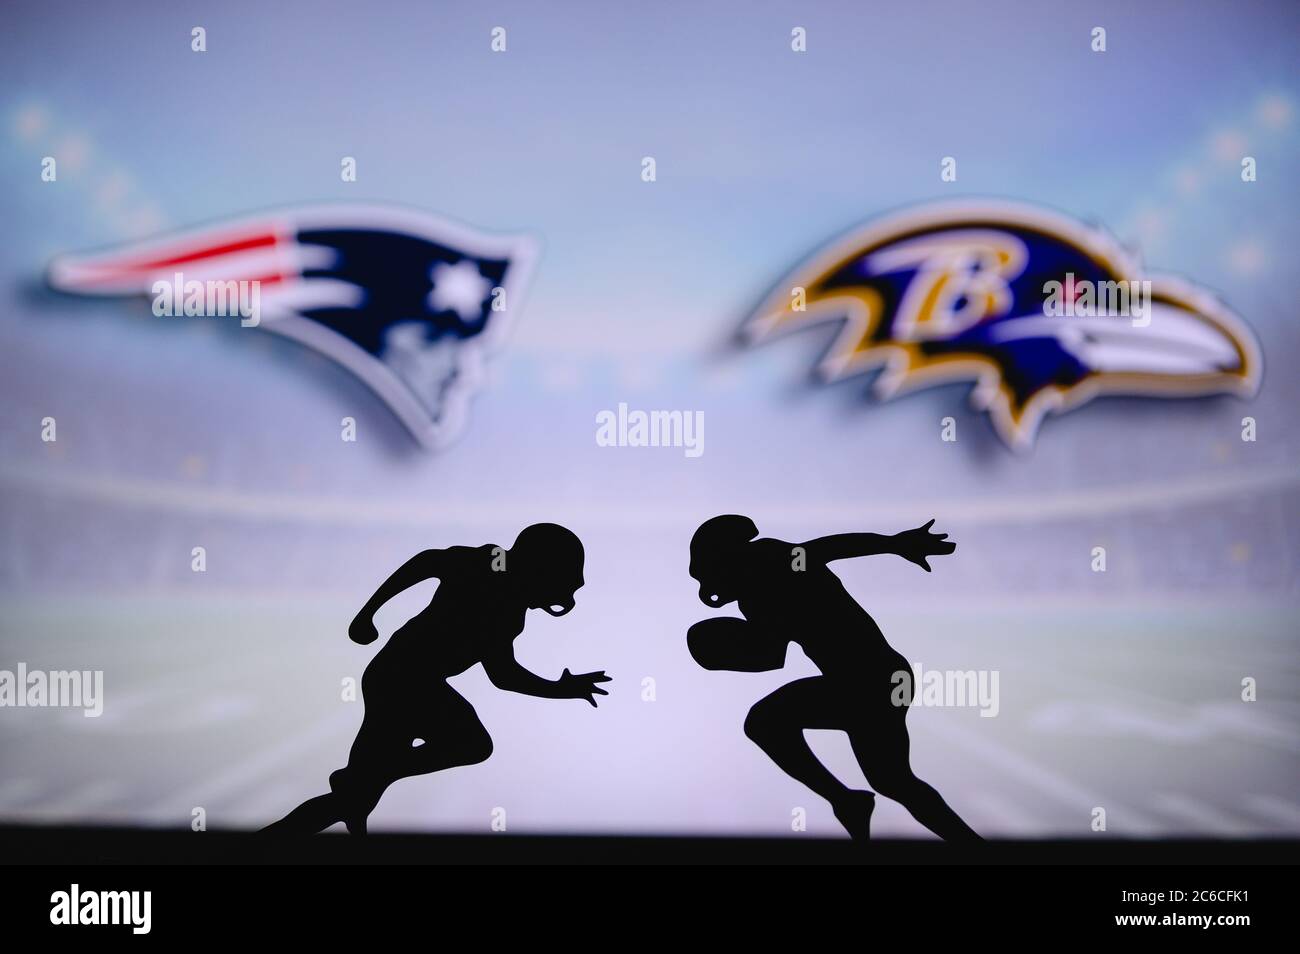 New England Patriots vs Baltimore Ravens. Affiche NFL Match. Deux joueurs de football américain se font face sur le terrain. Logo des clubs dans ba Banque D'Images